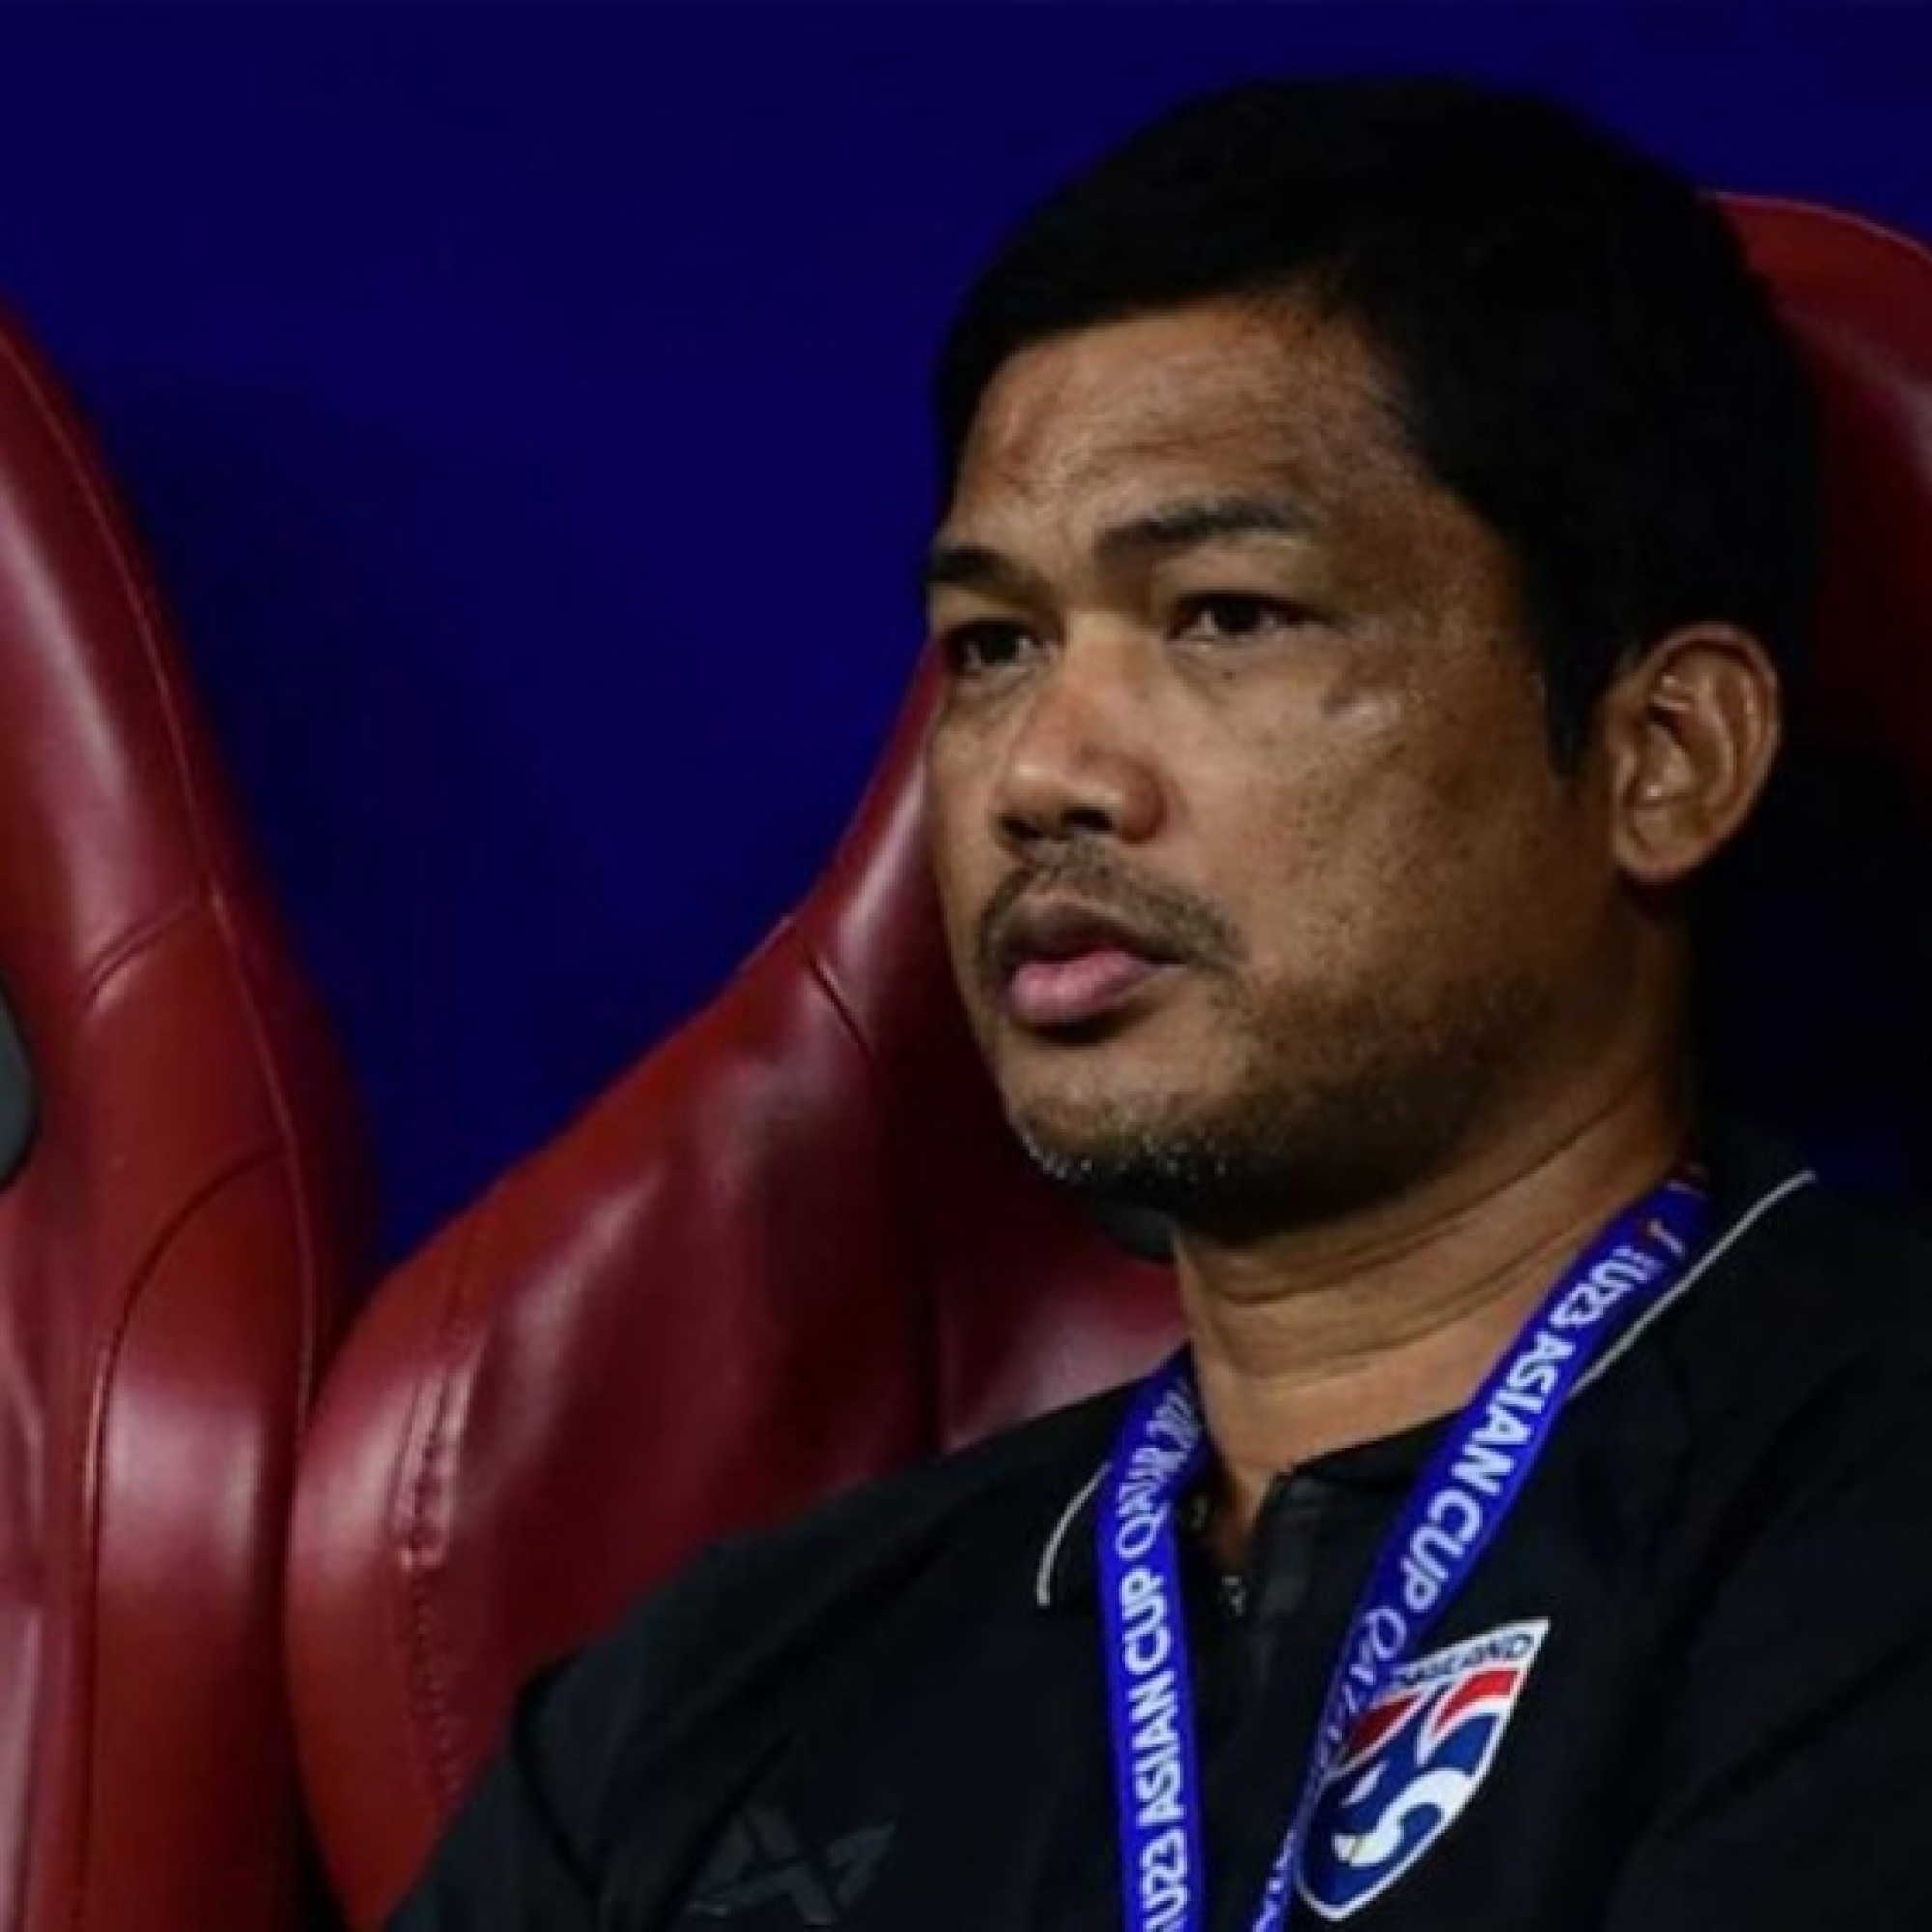  - HLV U23 Thái Lan nói lý do đội nhà thua thảm 0-5, báo chí xứ Chùa Vàng thất vọng